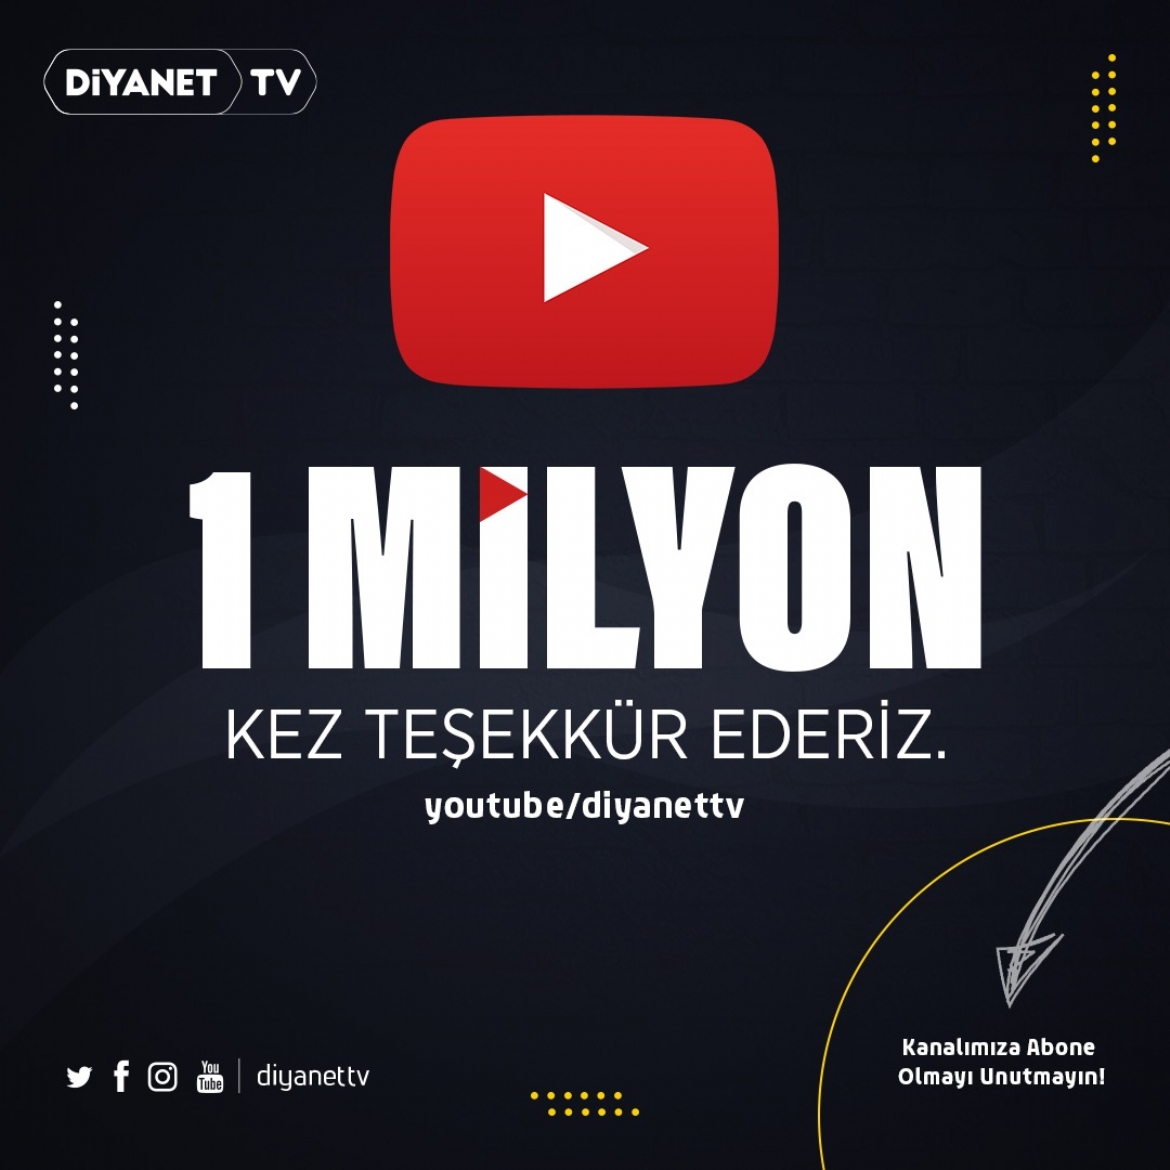 'Diyanet TV YouTube Kanalı' 1 Milyon aboneye ulaştı...